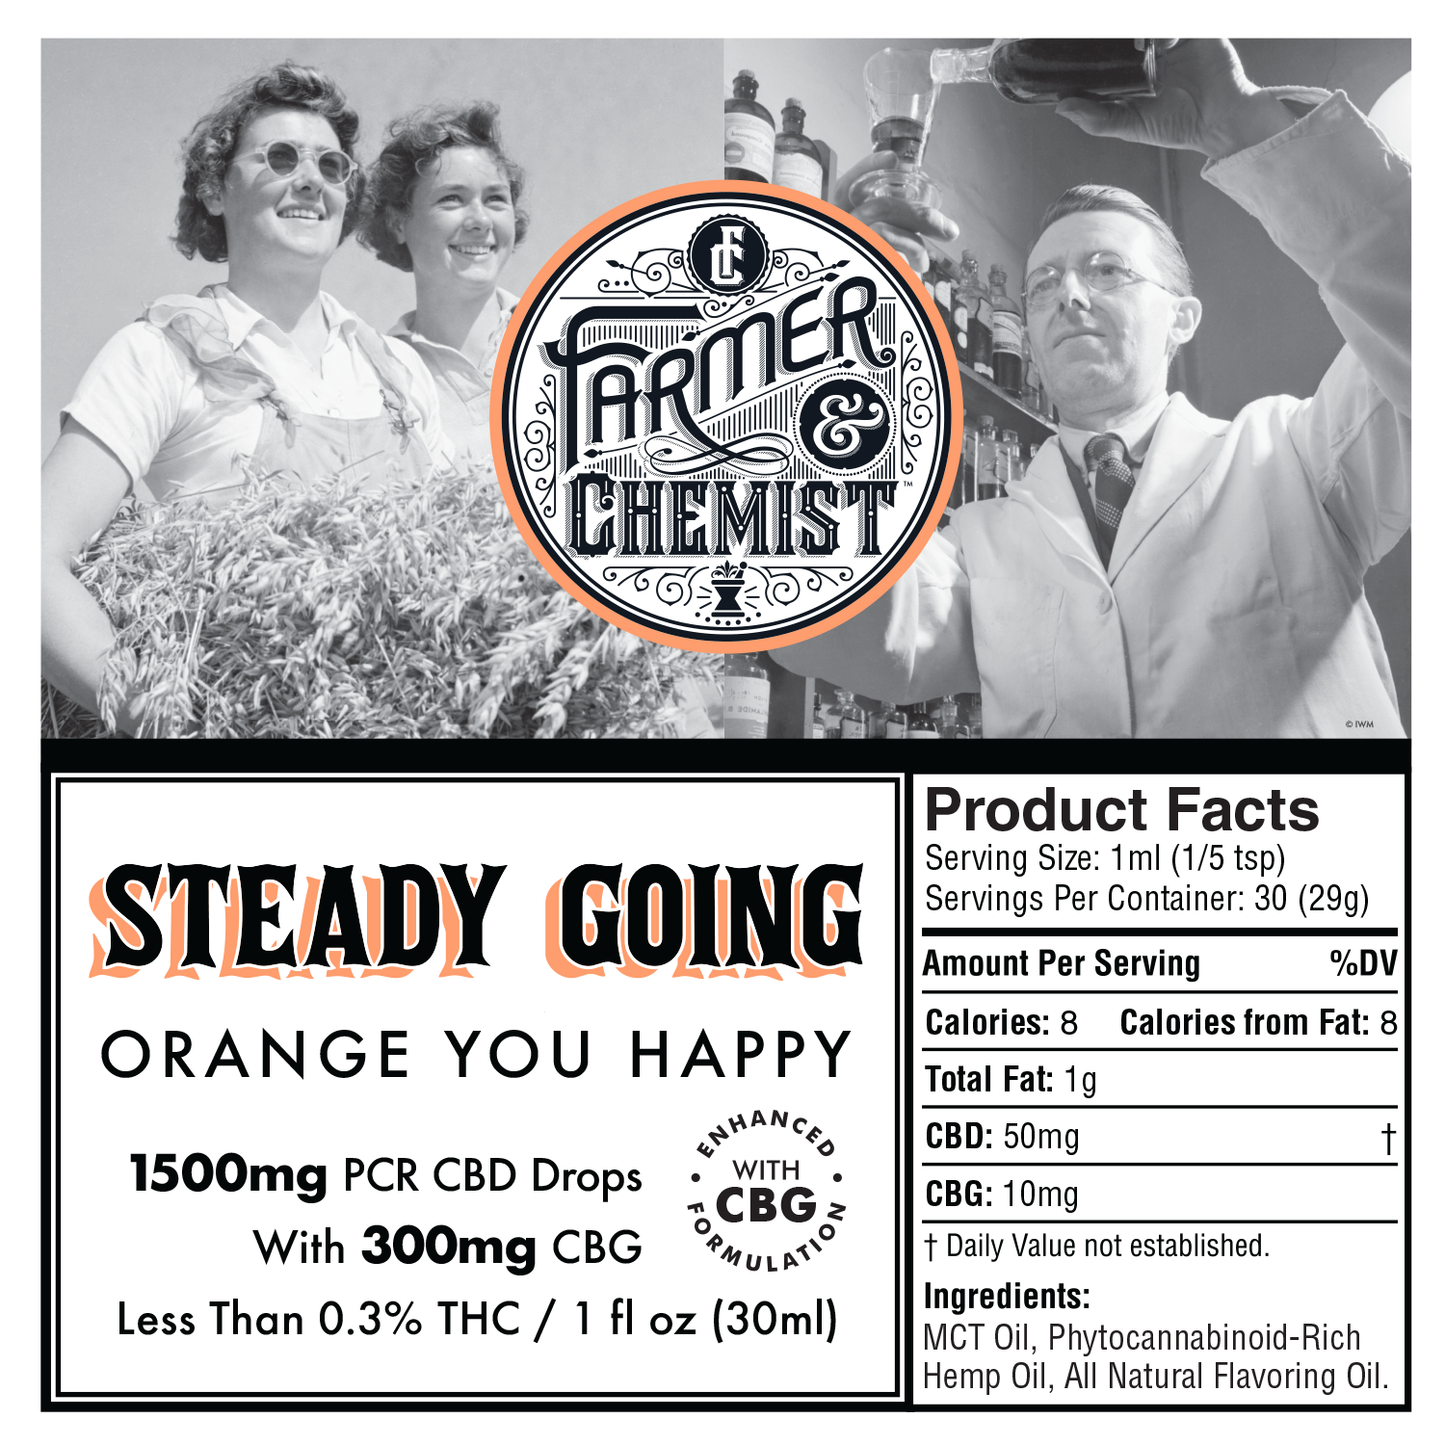 EN COURS STABLE - Orange You Happy 1500mg CBD/300mg CBG PCR Teinture (Caisse de 4)